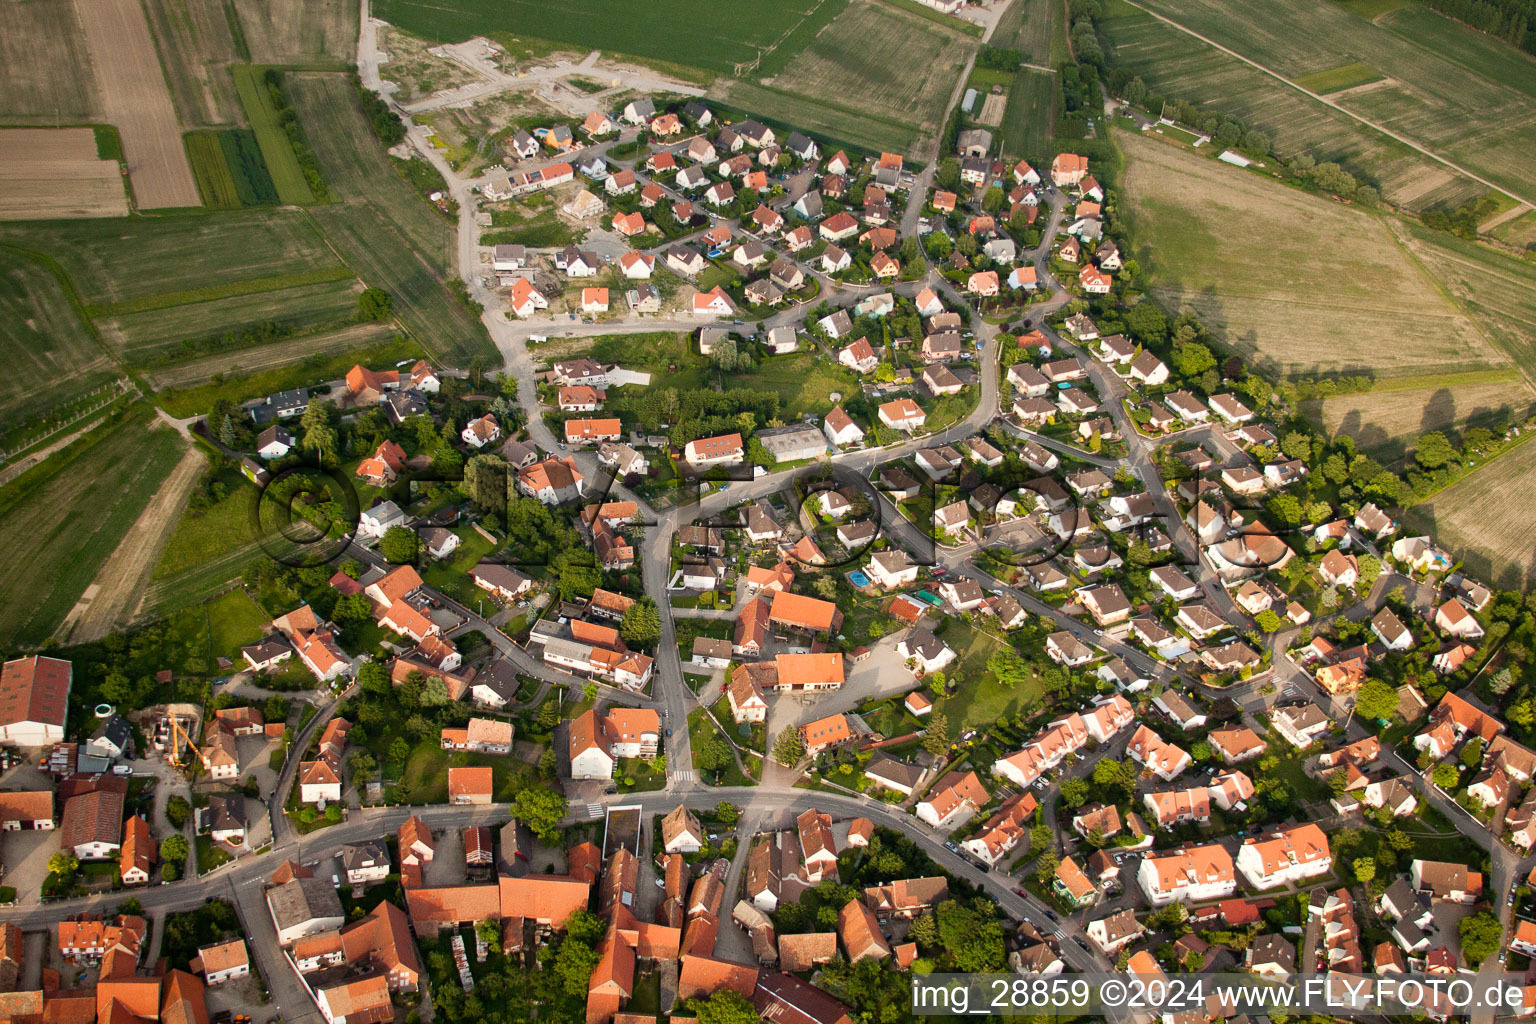 Vue aérienne de Zone de peuplement à Kilstett dans le département Bas Rhin, France